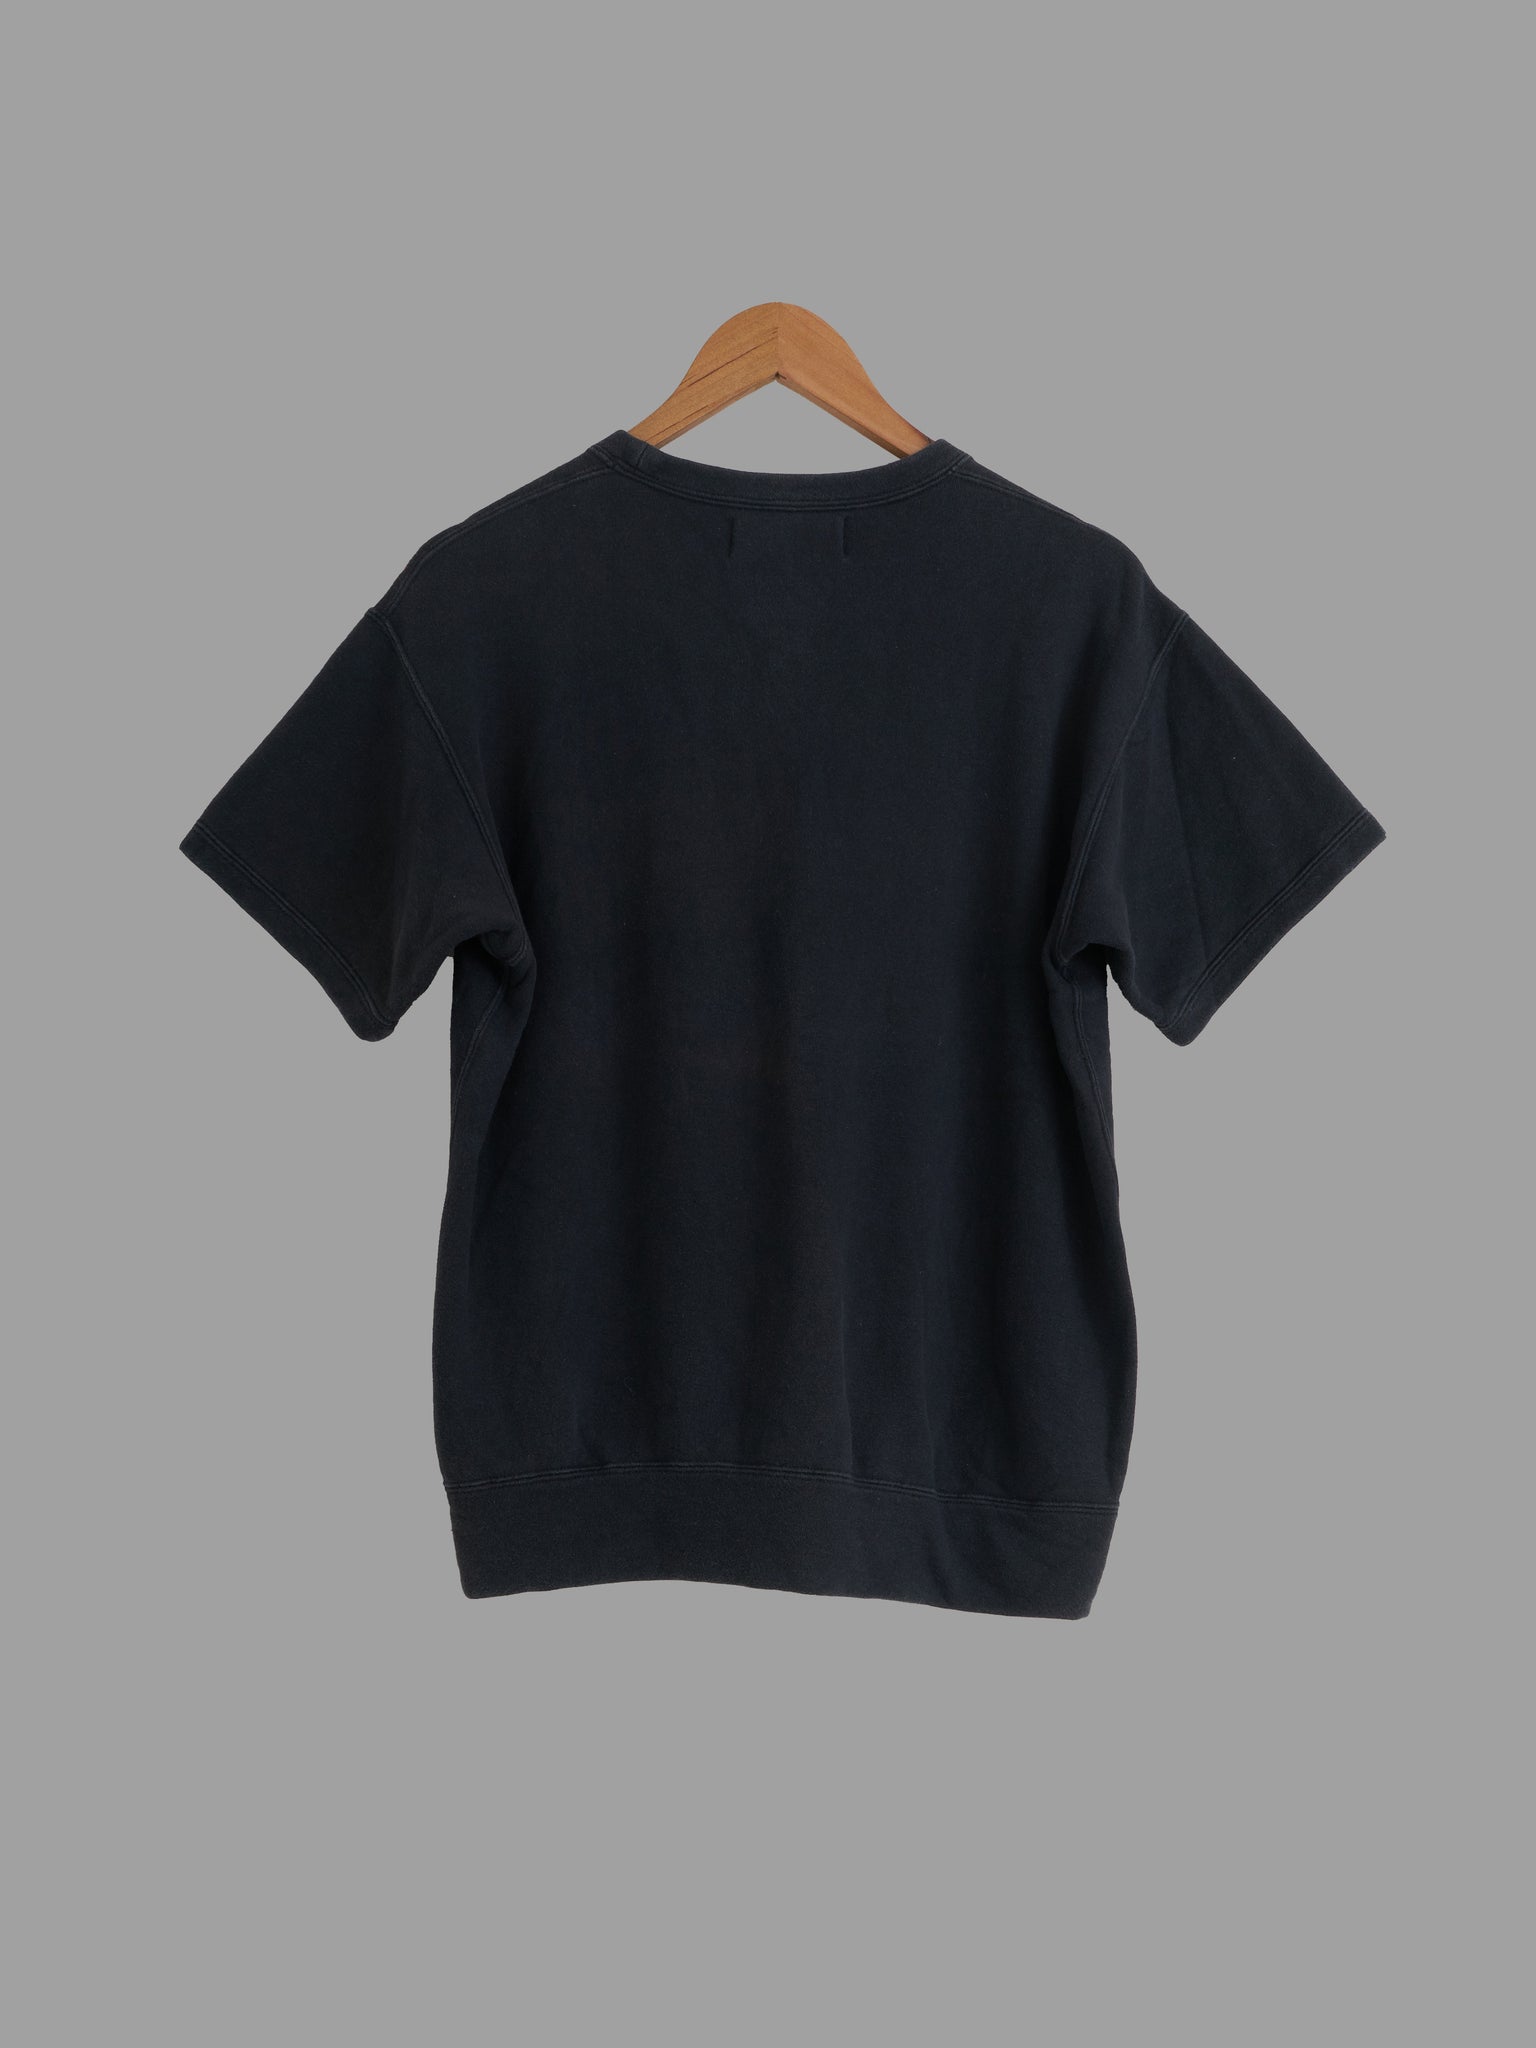 Tricot Comme des Garcons 1980s dark navy cotton short sleeve sweatshirt